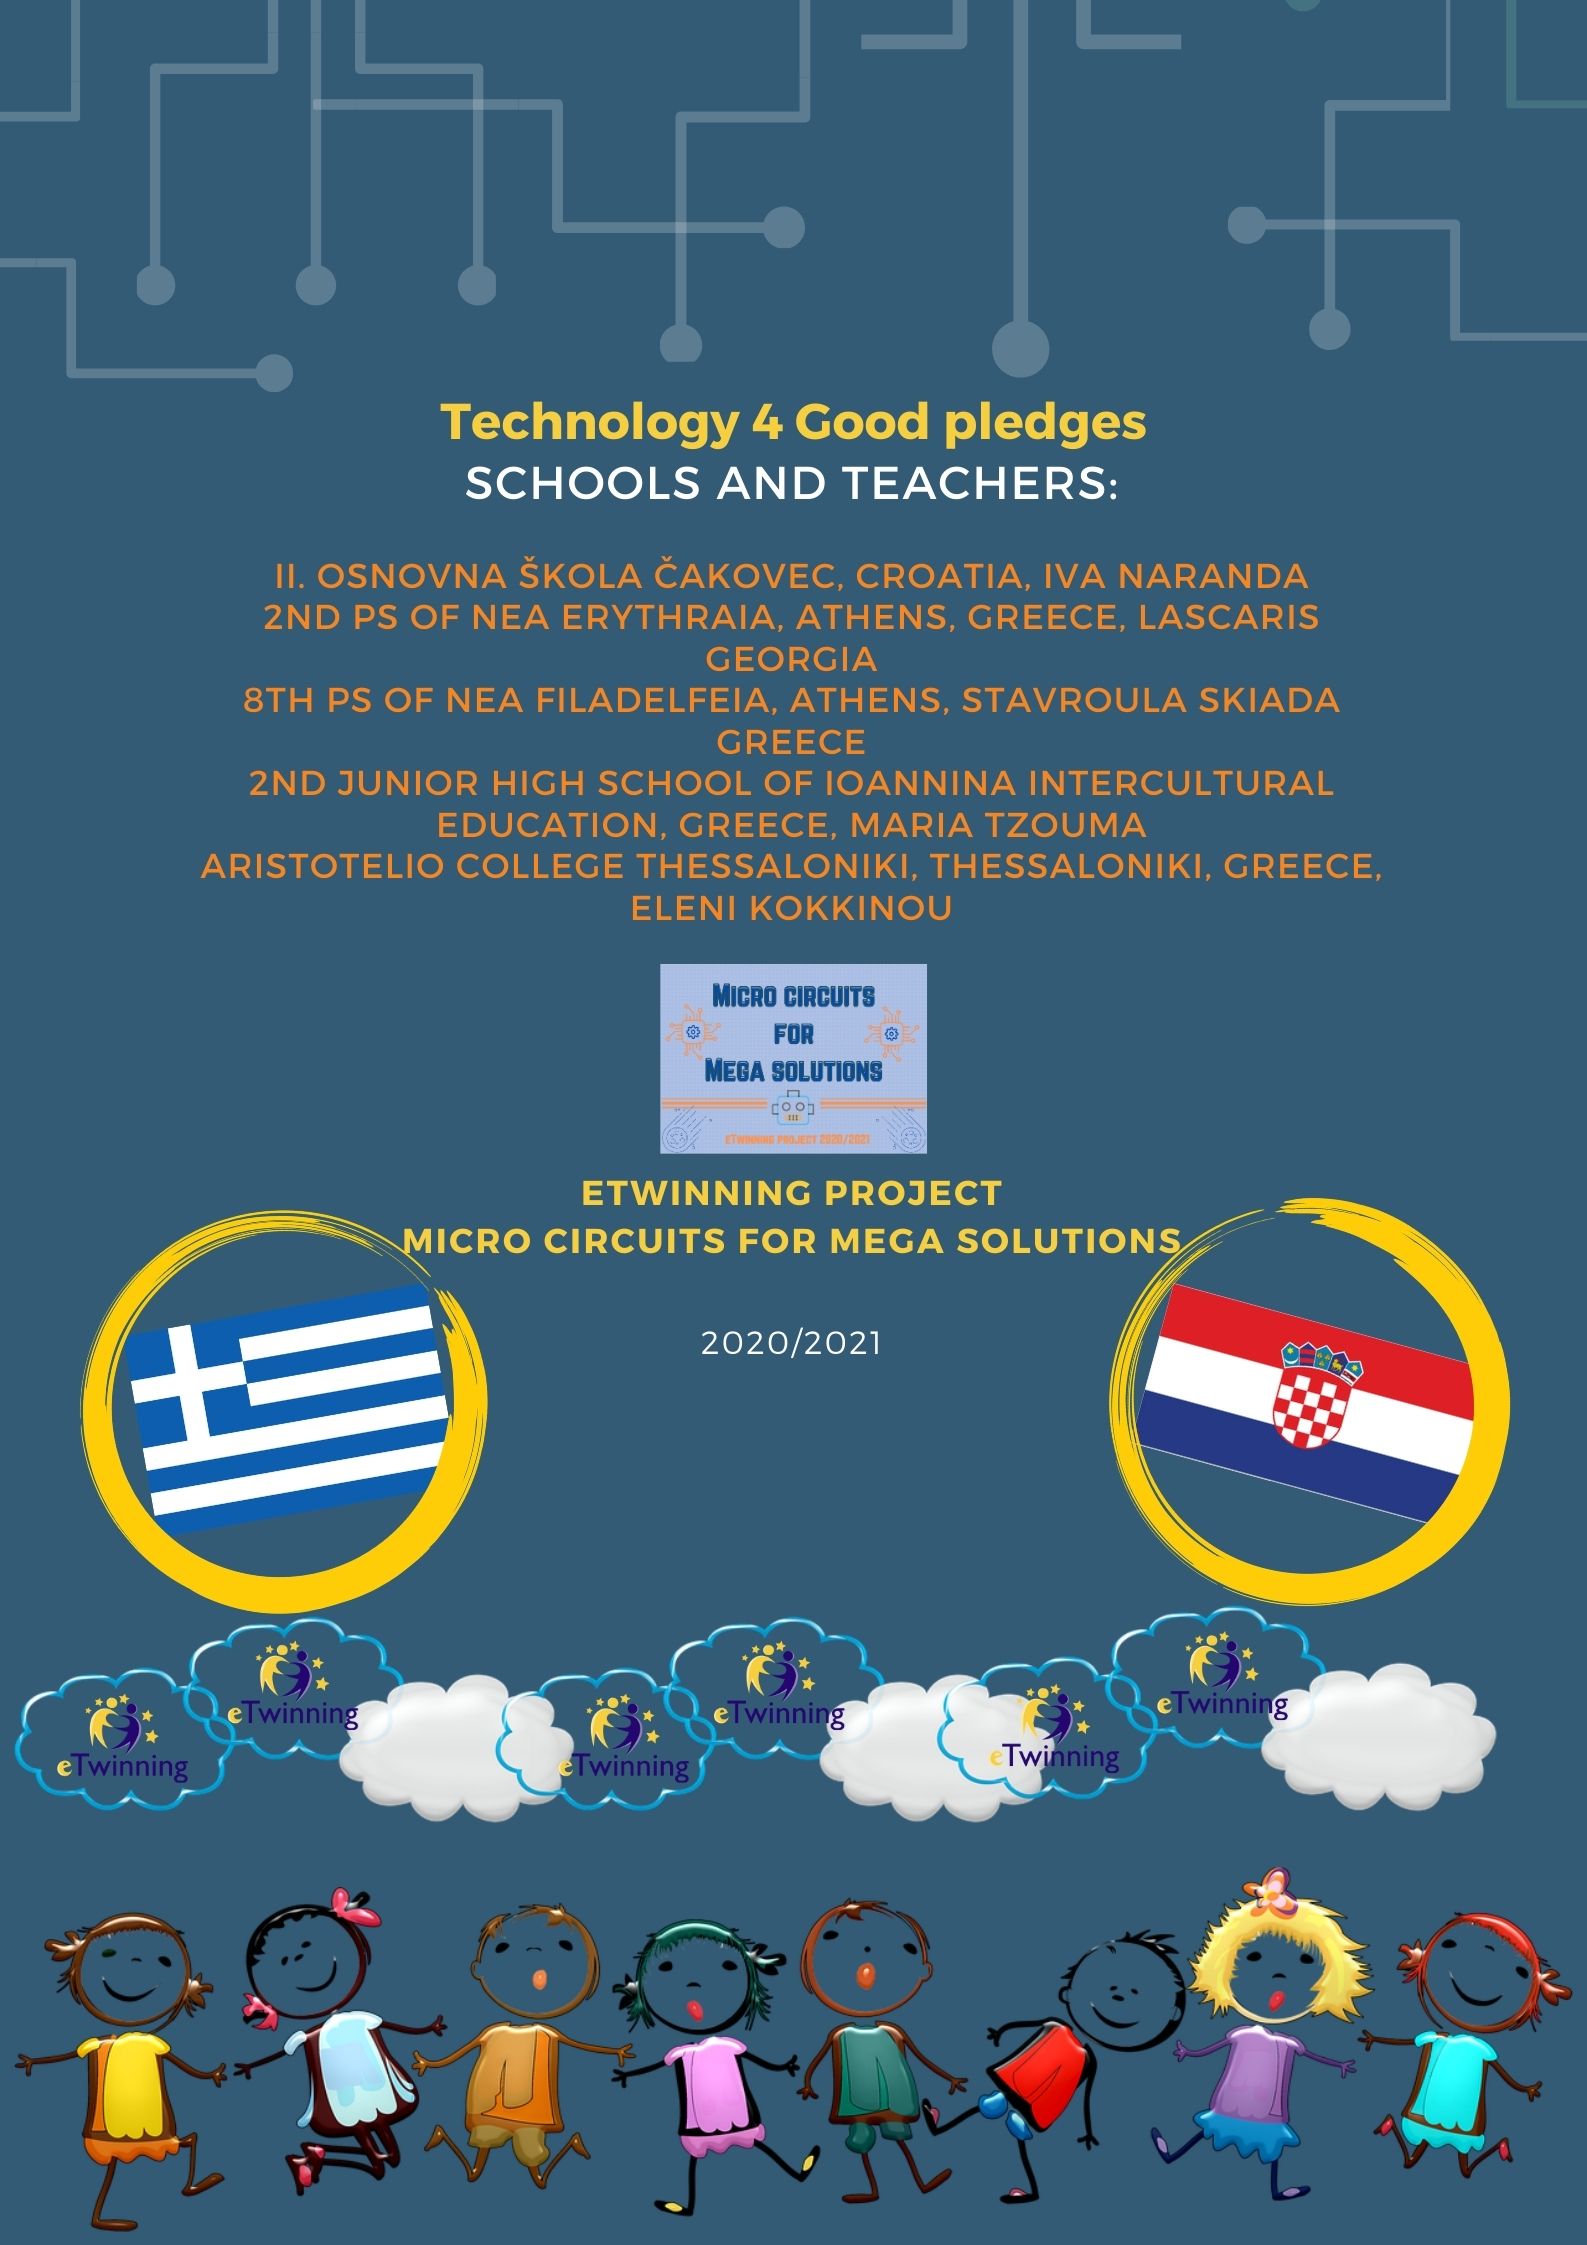 Technology4Good pledges